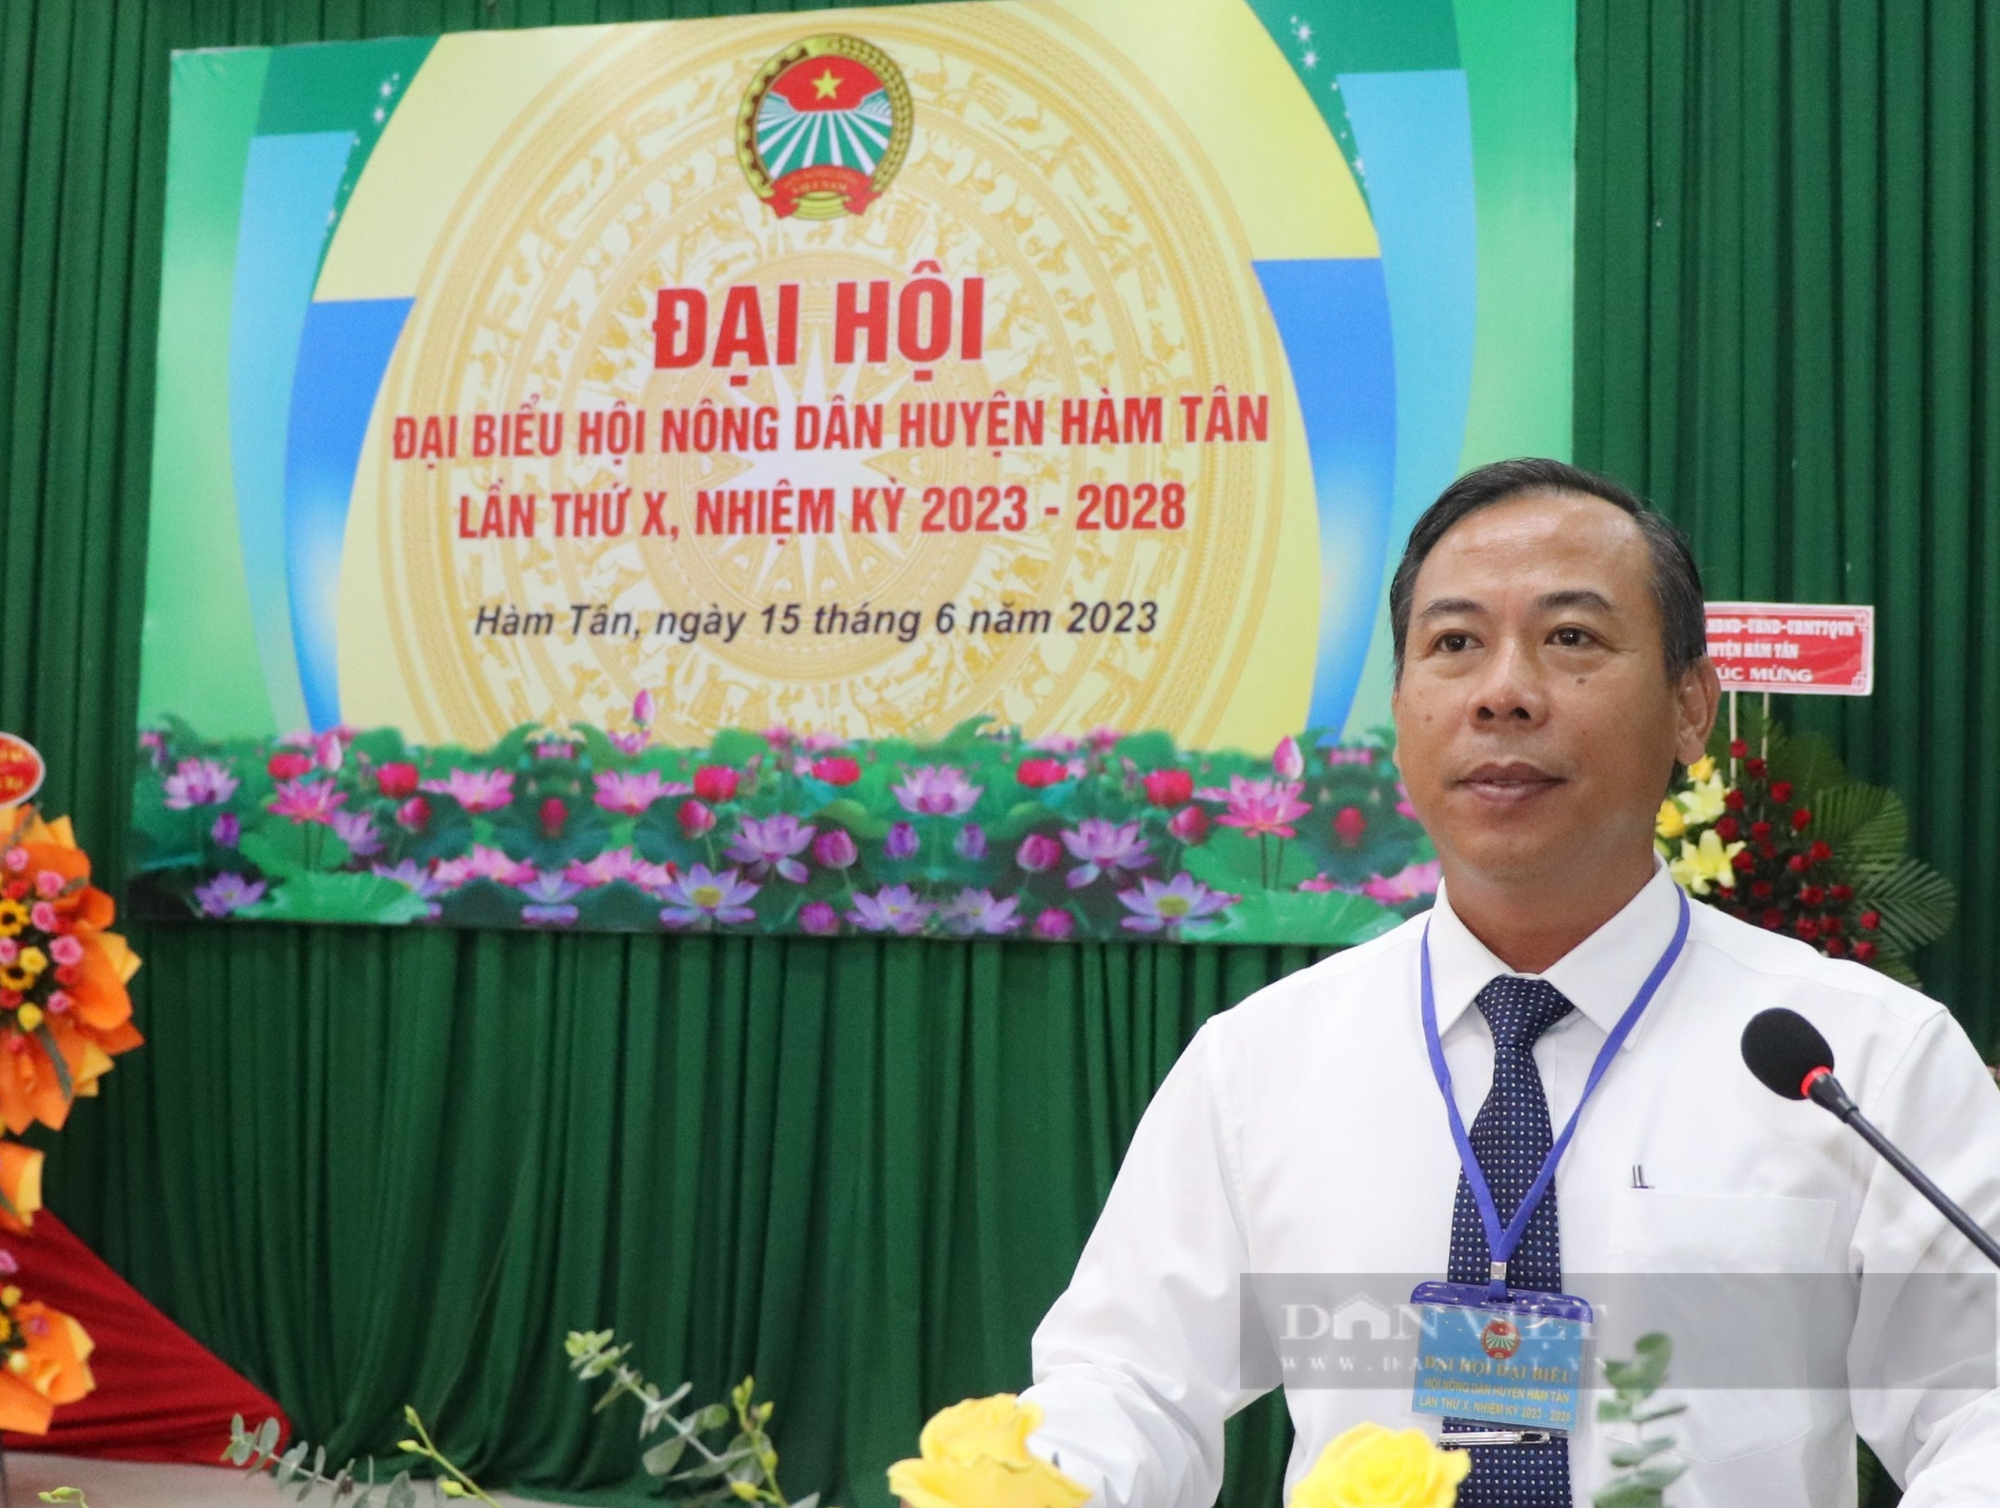 Bình Thuận: Ông Phạm Xuân Thọ tái đắc cử Chủ tịch Hội Nông dân huyện Hàm Tân - Ảnh 6.